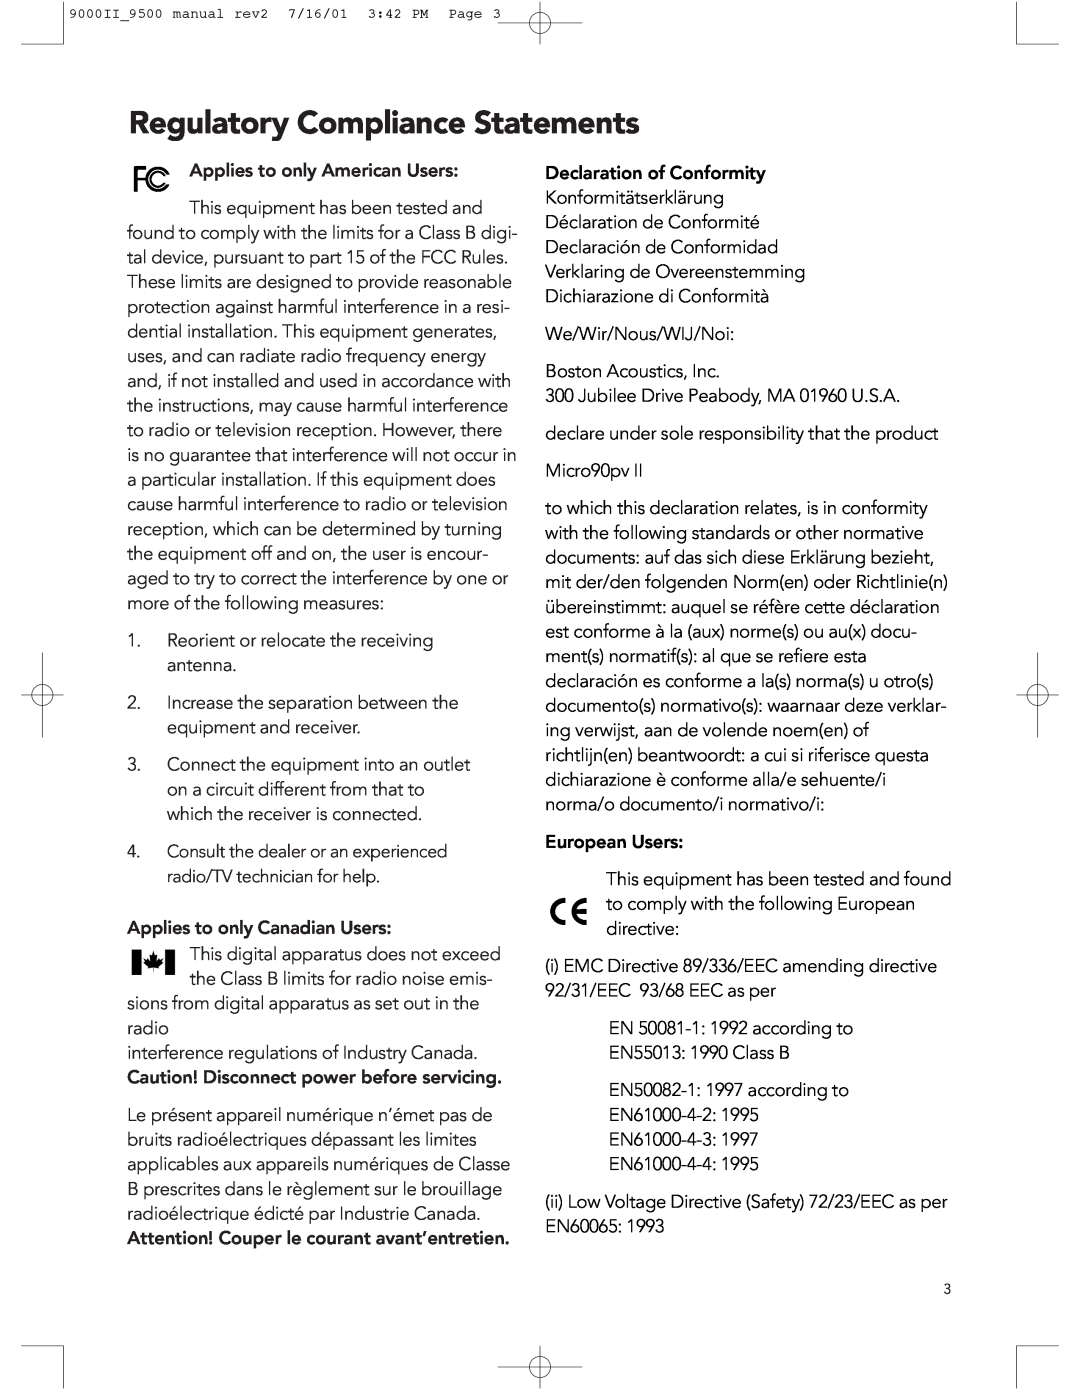 Boston Acoustics 9500, 9000 manual Regulatory Compliance Statements 